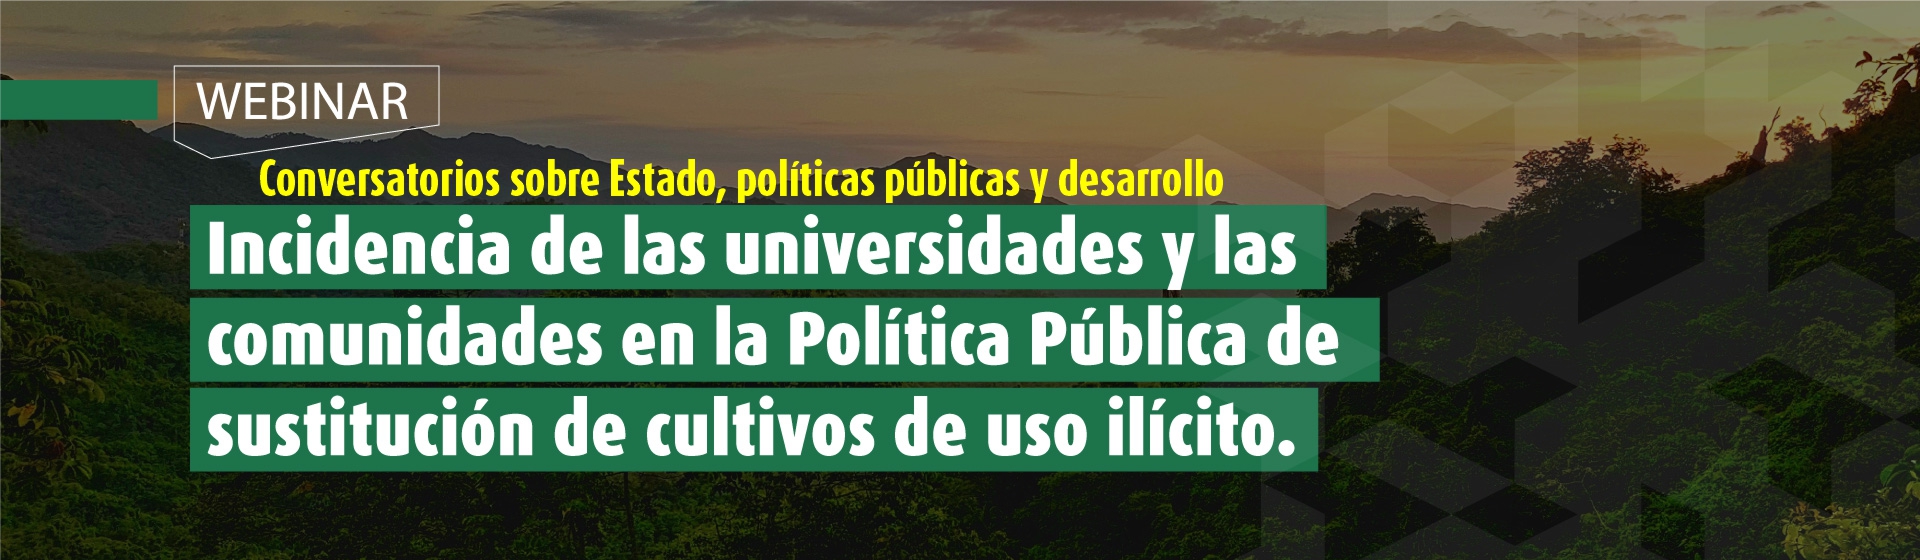 Incidencia de las universidades y las comunidades en la Política Pública de sustitución de cultivos de uso ilícito- Cider | Uniandes